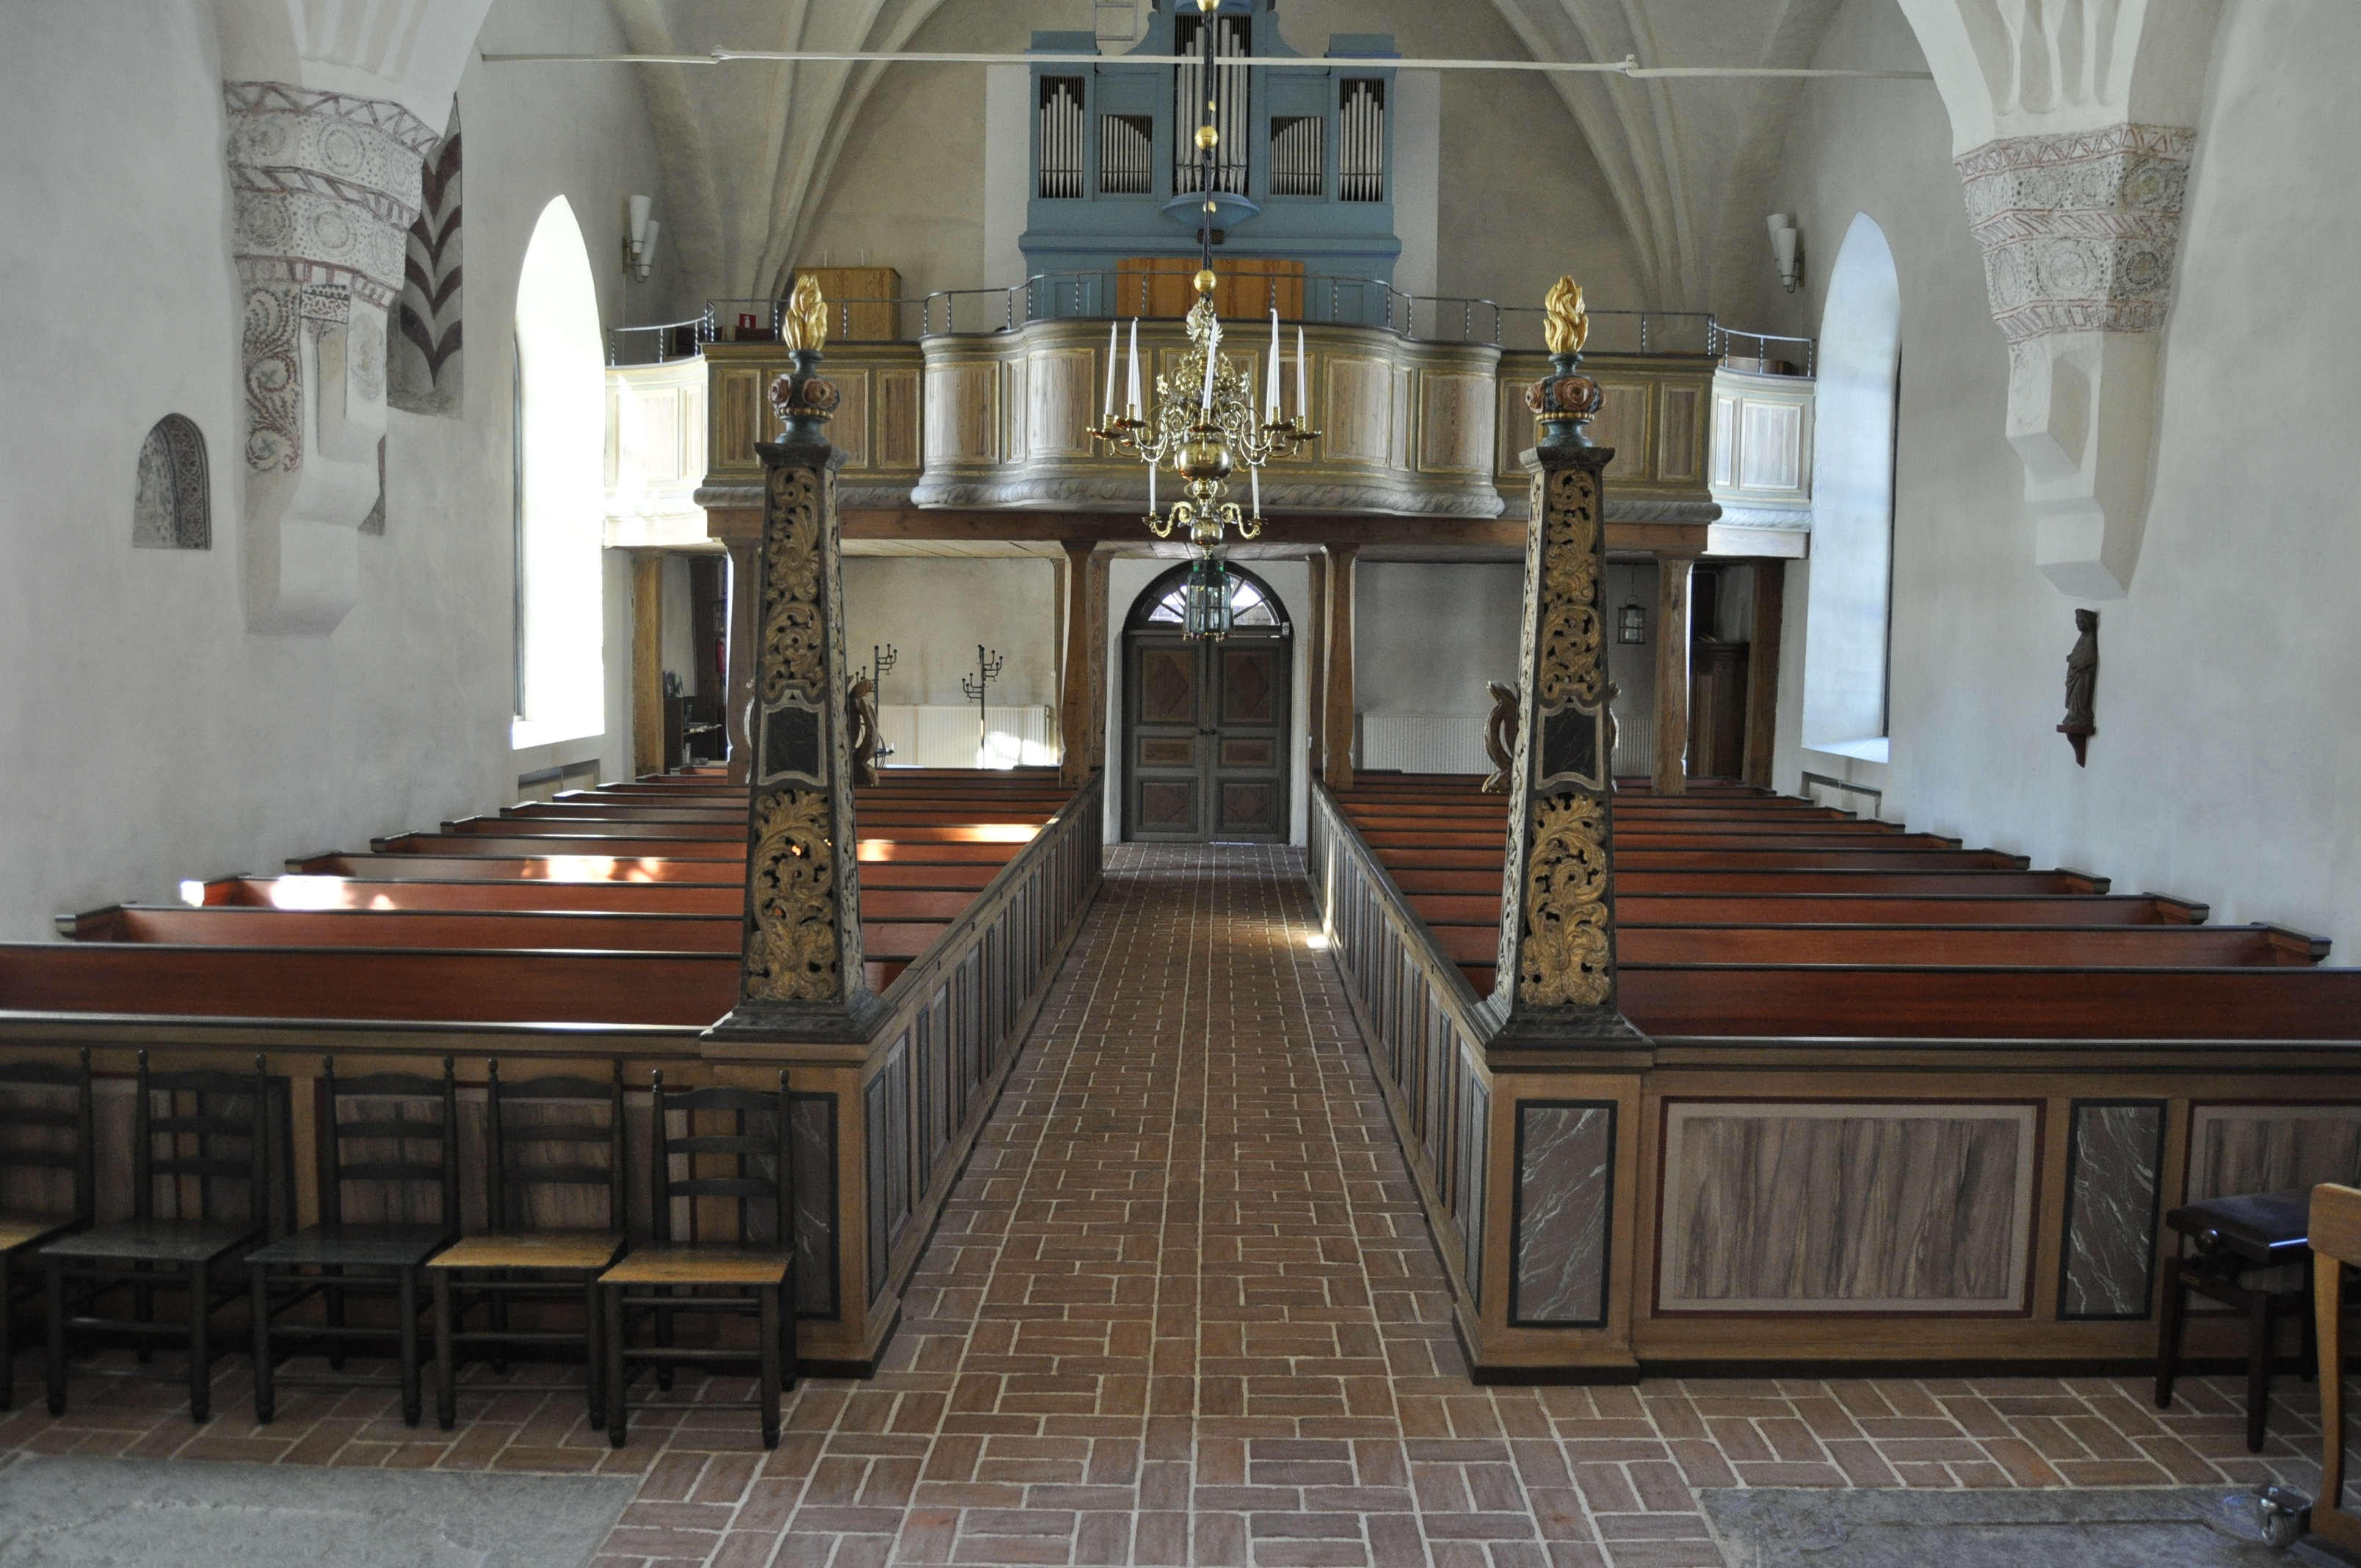 Enåkers kyrka invändigt med stängda träbänkar, utsirade pelare, tegelgolv och vitkalkade väggar.